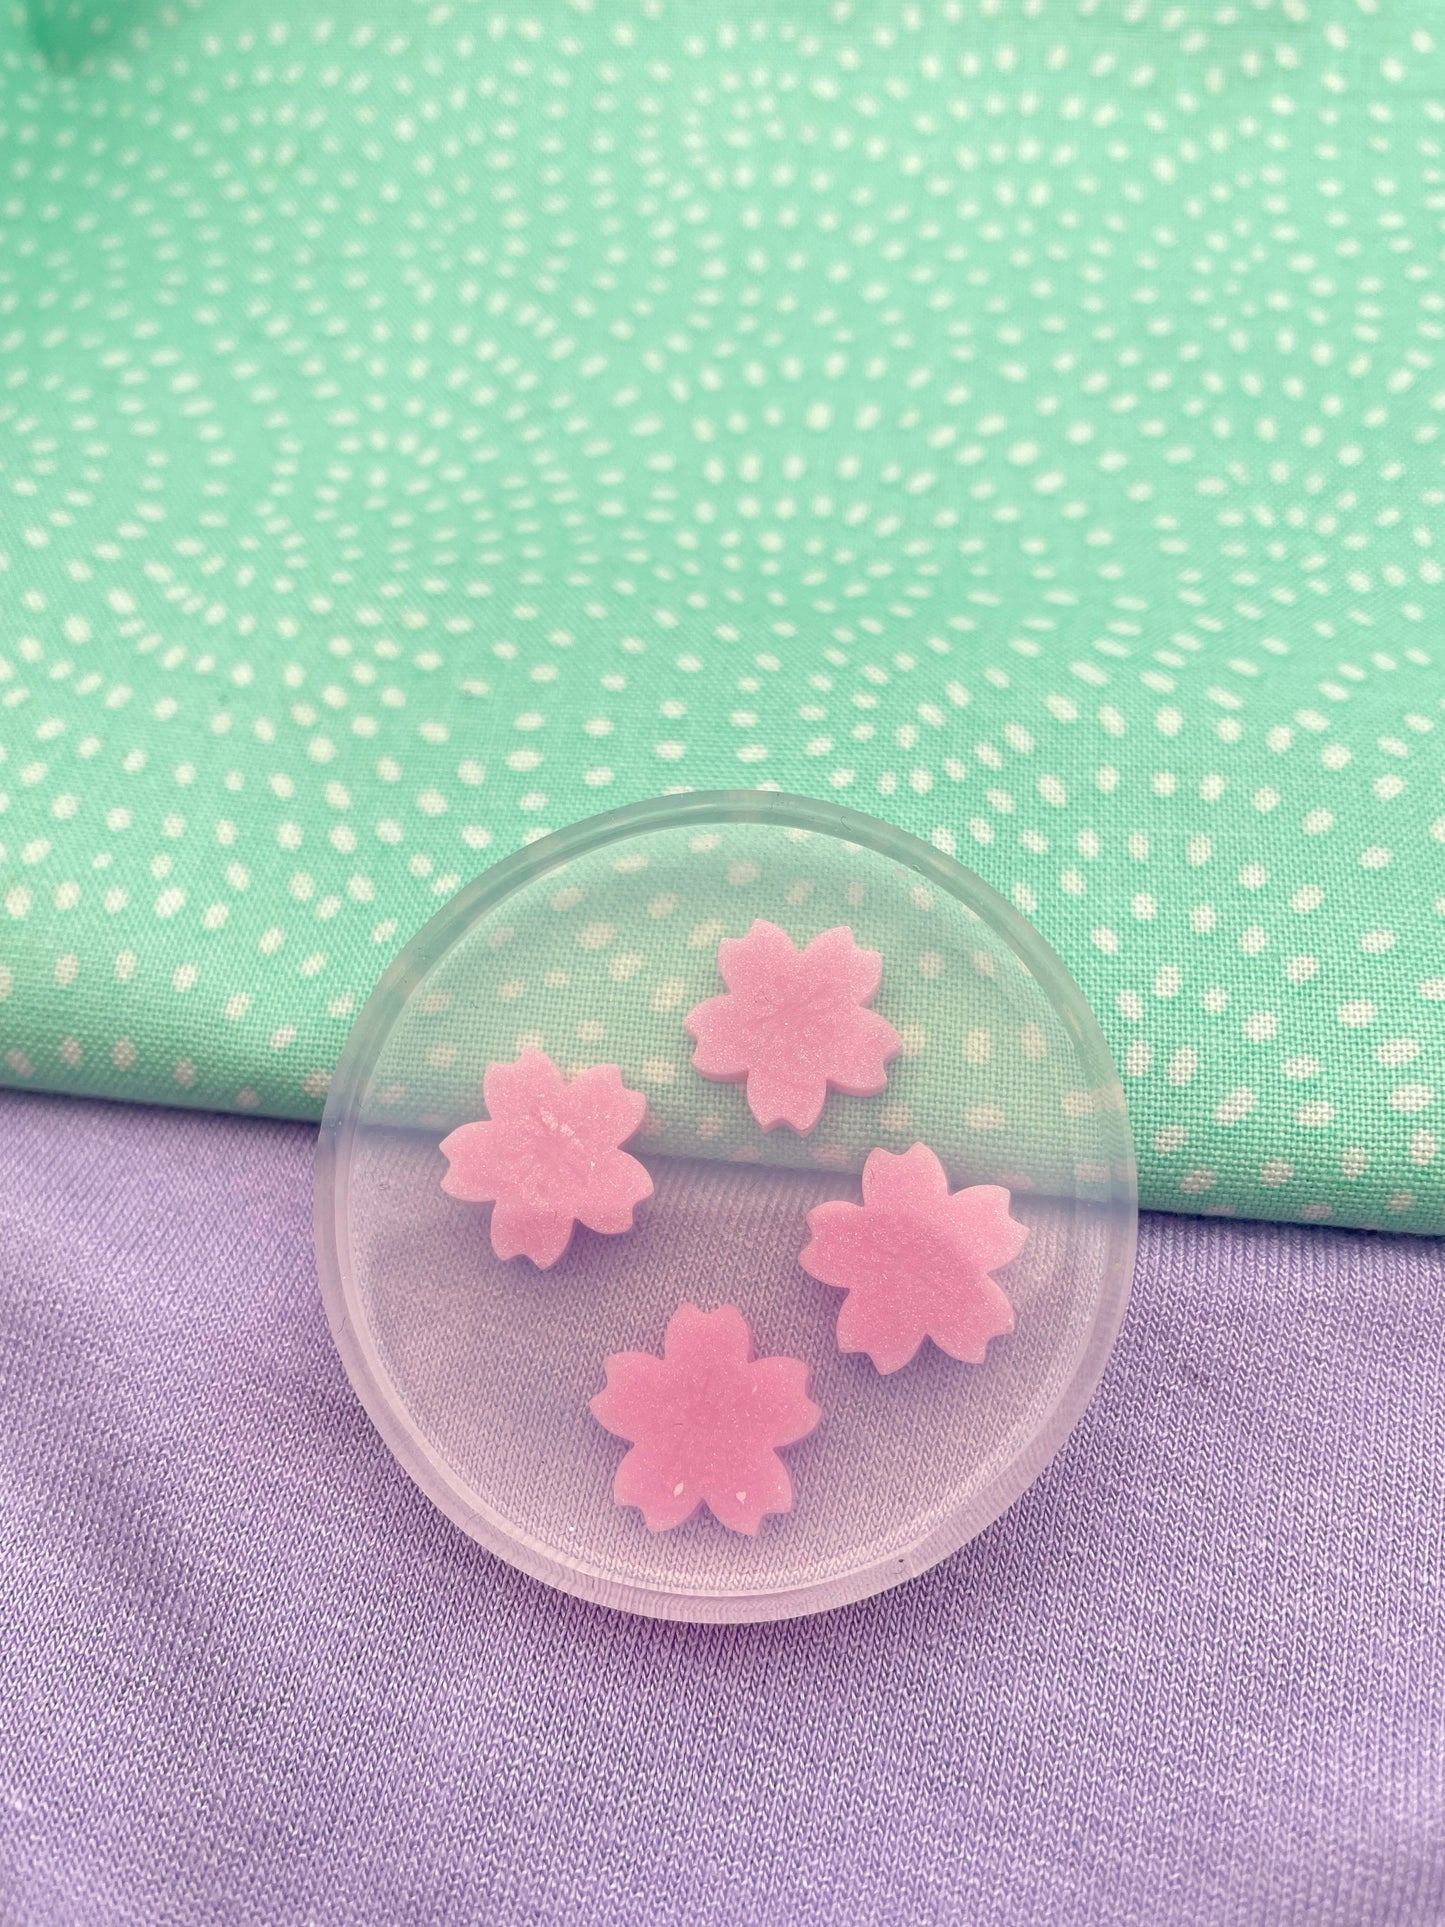 Mini Japanese Sakura Flower Stud Earring Mold